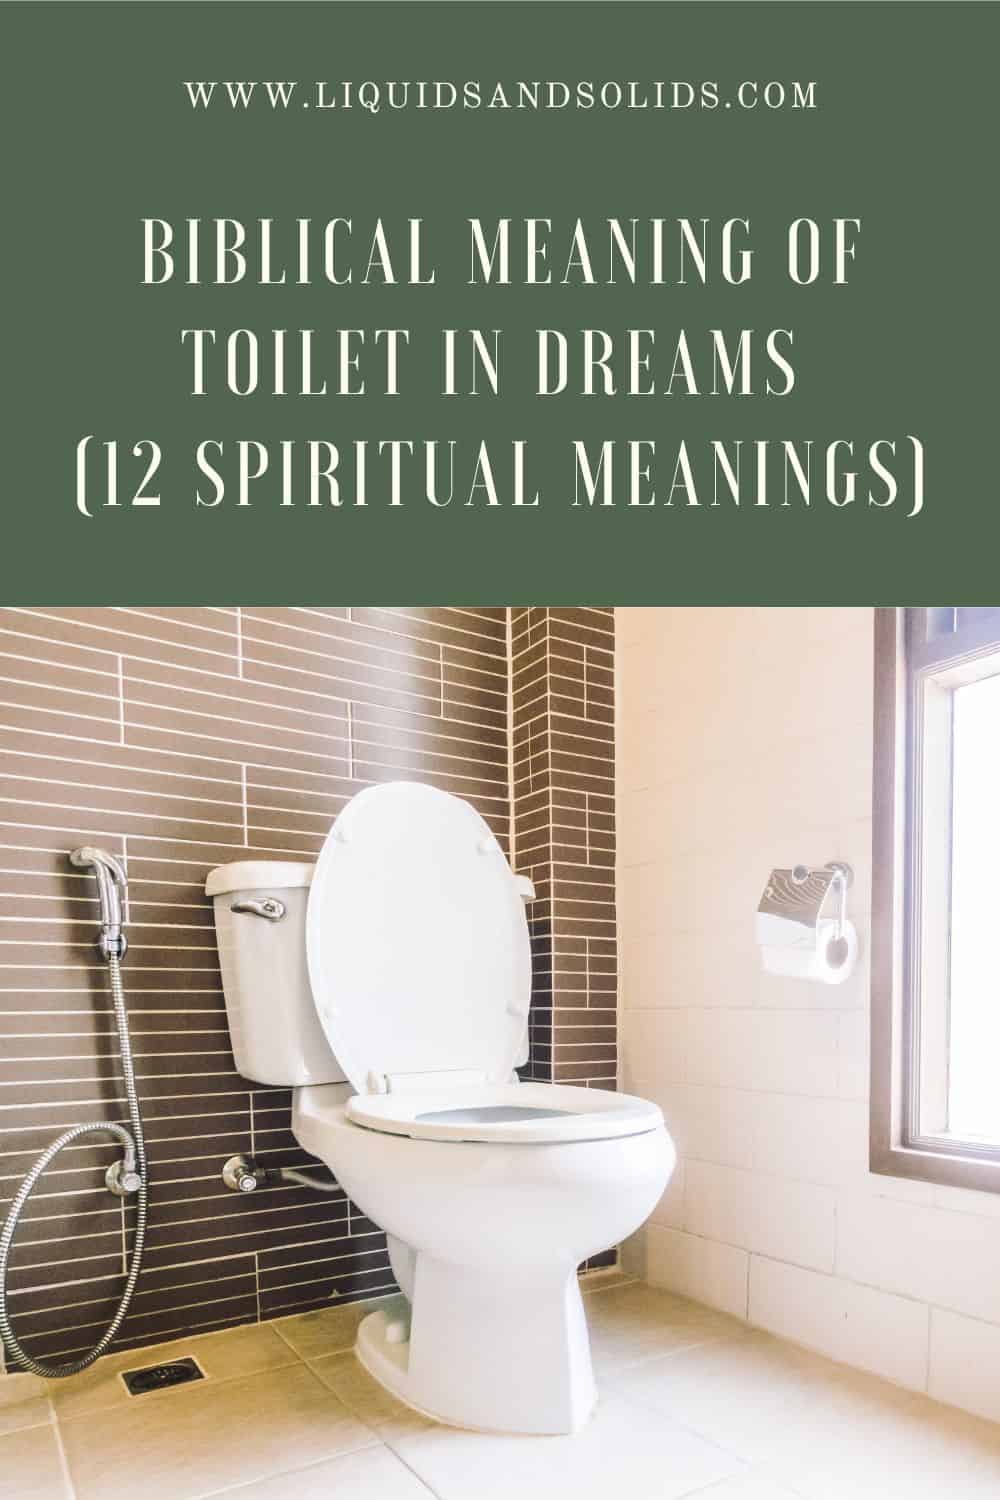  المعنى الكتابي للمرحاض في الأحلام (12 معاني روحية)